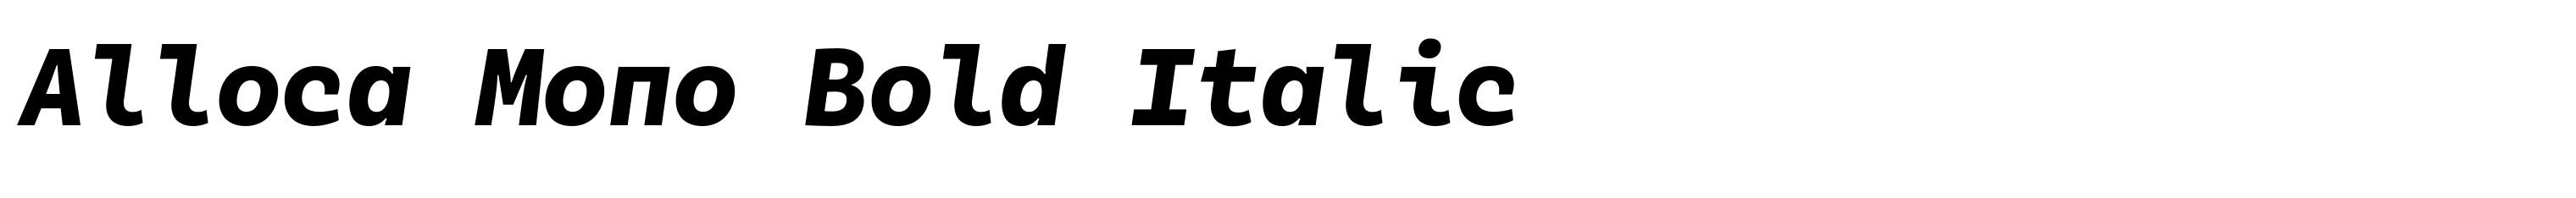 Alloca Mono Bold Italic